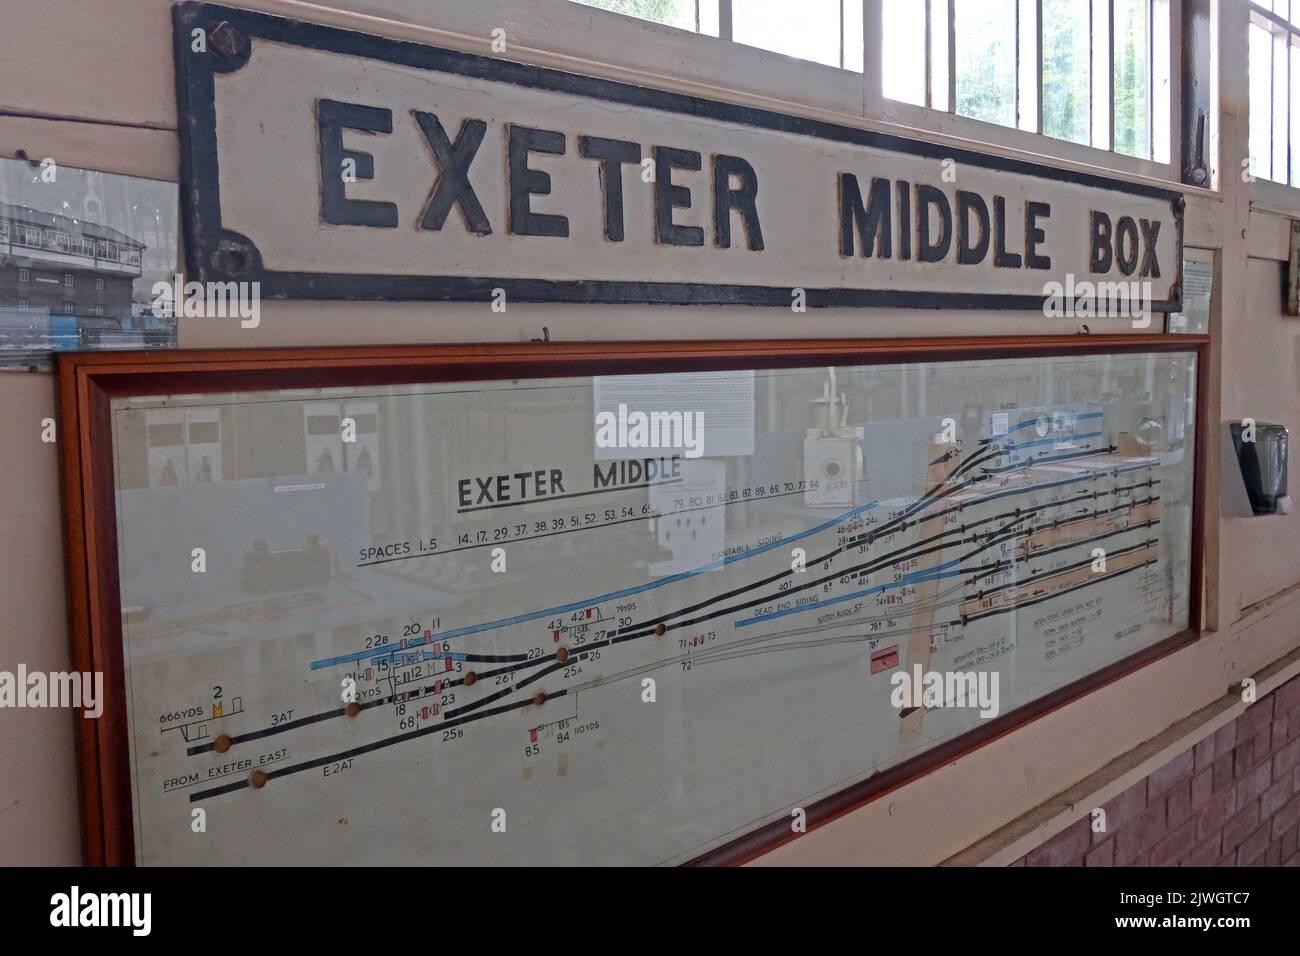 Exeter middle Box - Signal Box - Crewe, Cheshire, England, UK Stock Photo